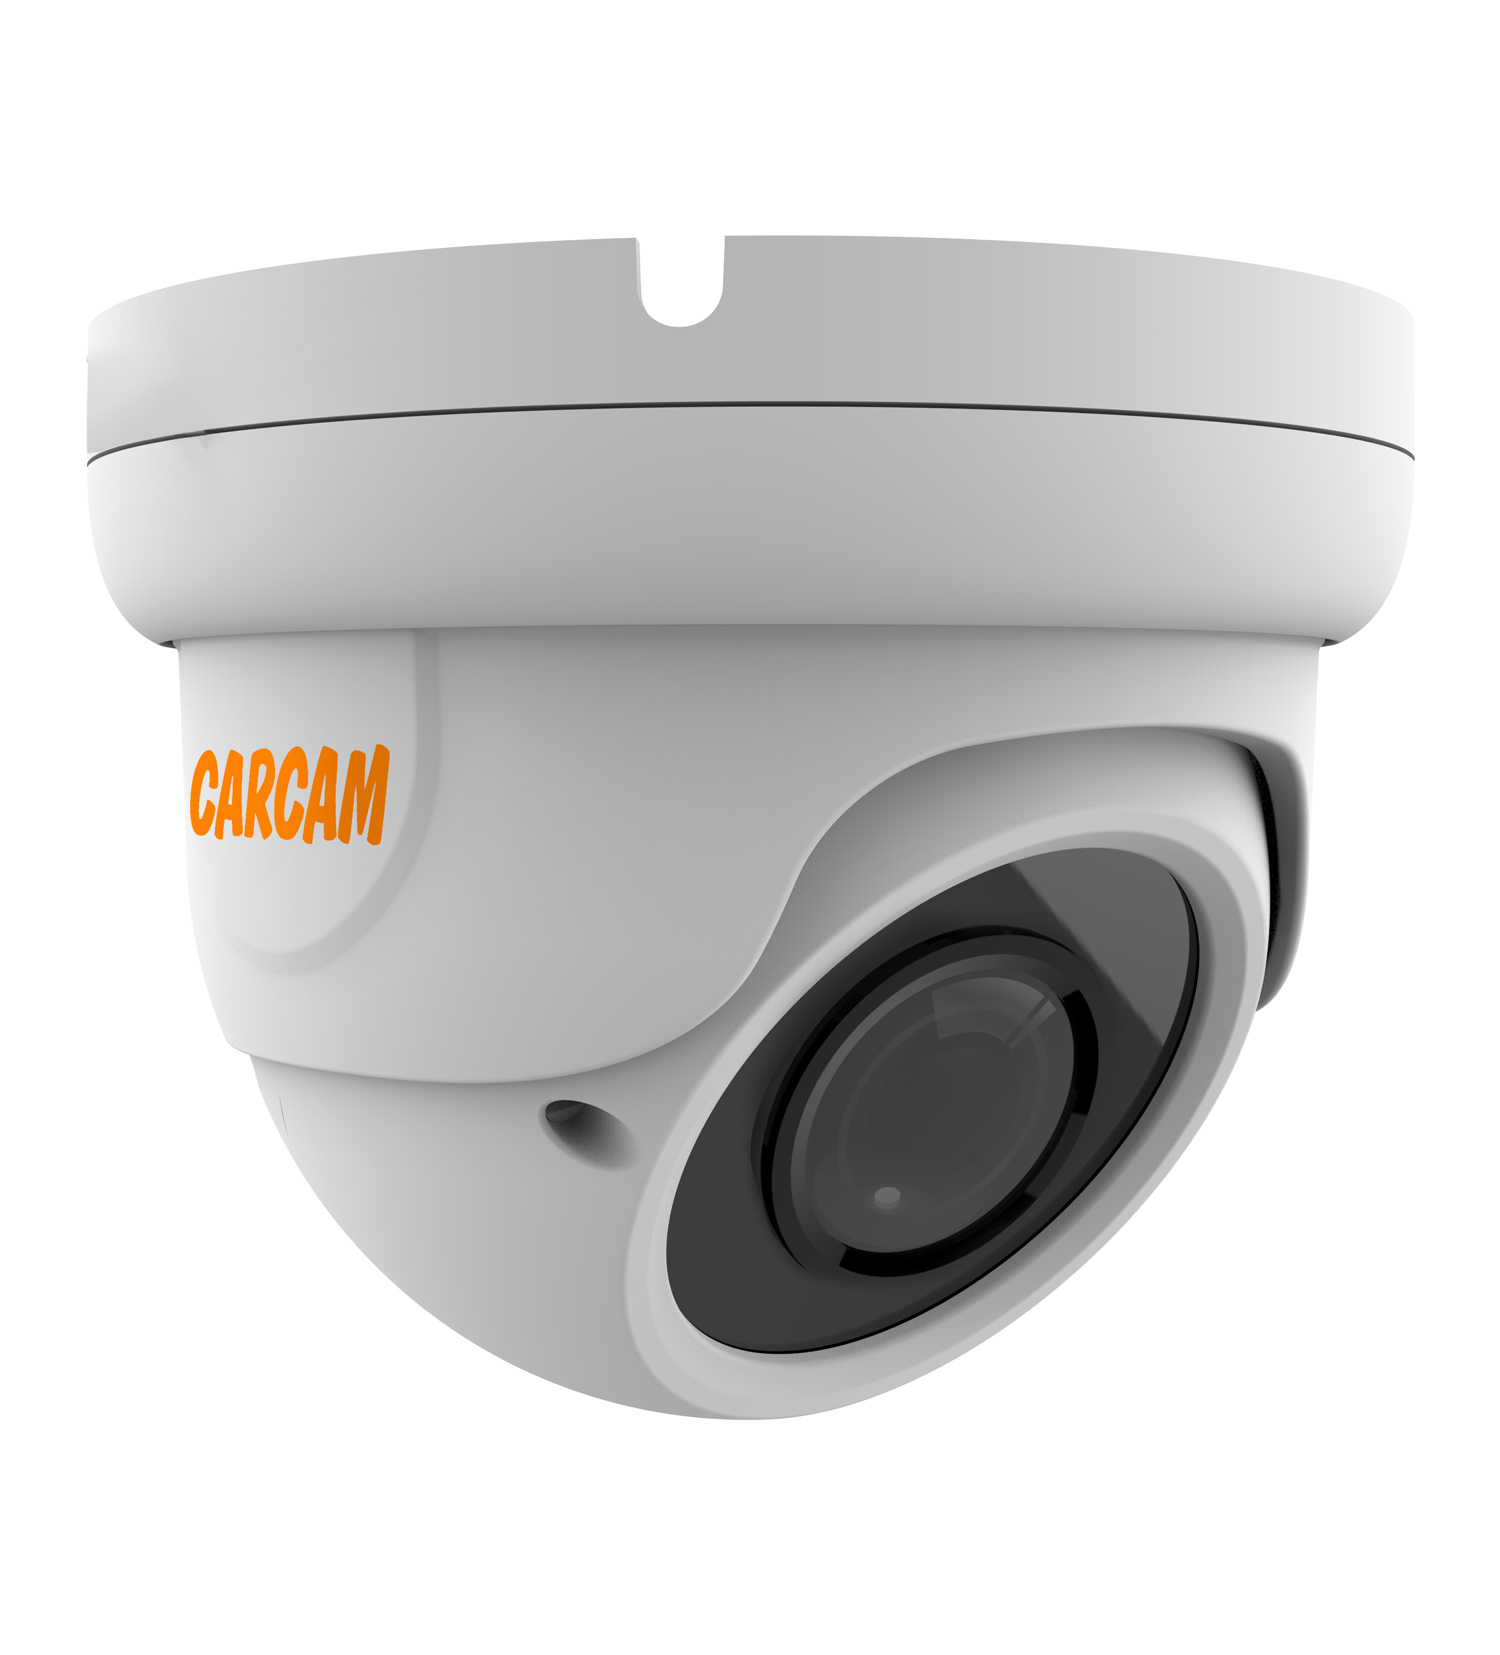 Купольная AHD-камера CARCAM 2MP Dome HD Camera 2041 (2.8-12mm) купольная full hd ip камера с poe микрофоном и ик подсветкой 25 м carcam 2mp dome ip camera 2071m